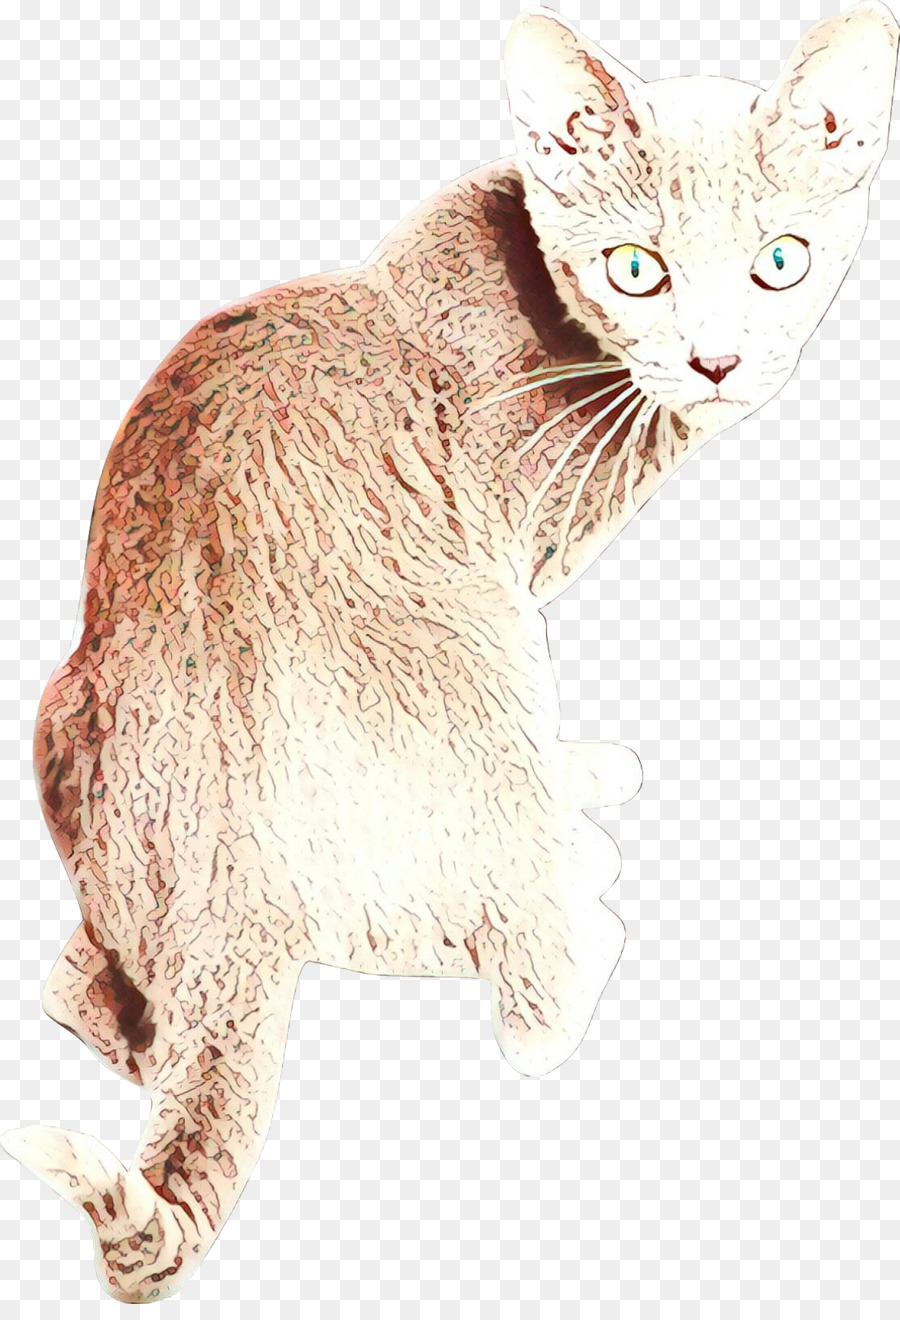 Gato，De Pequeñas A Medianas Gatos PNG